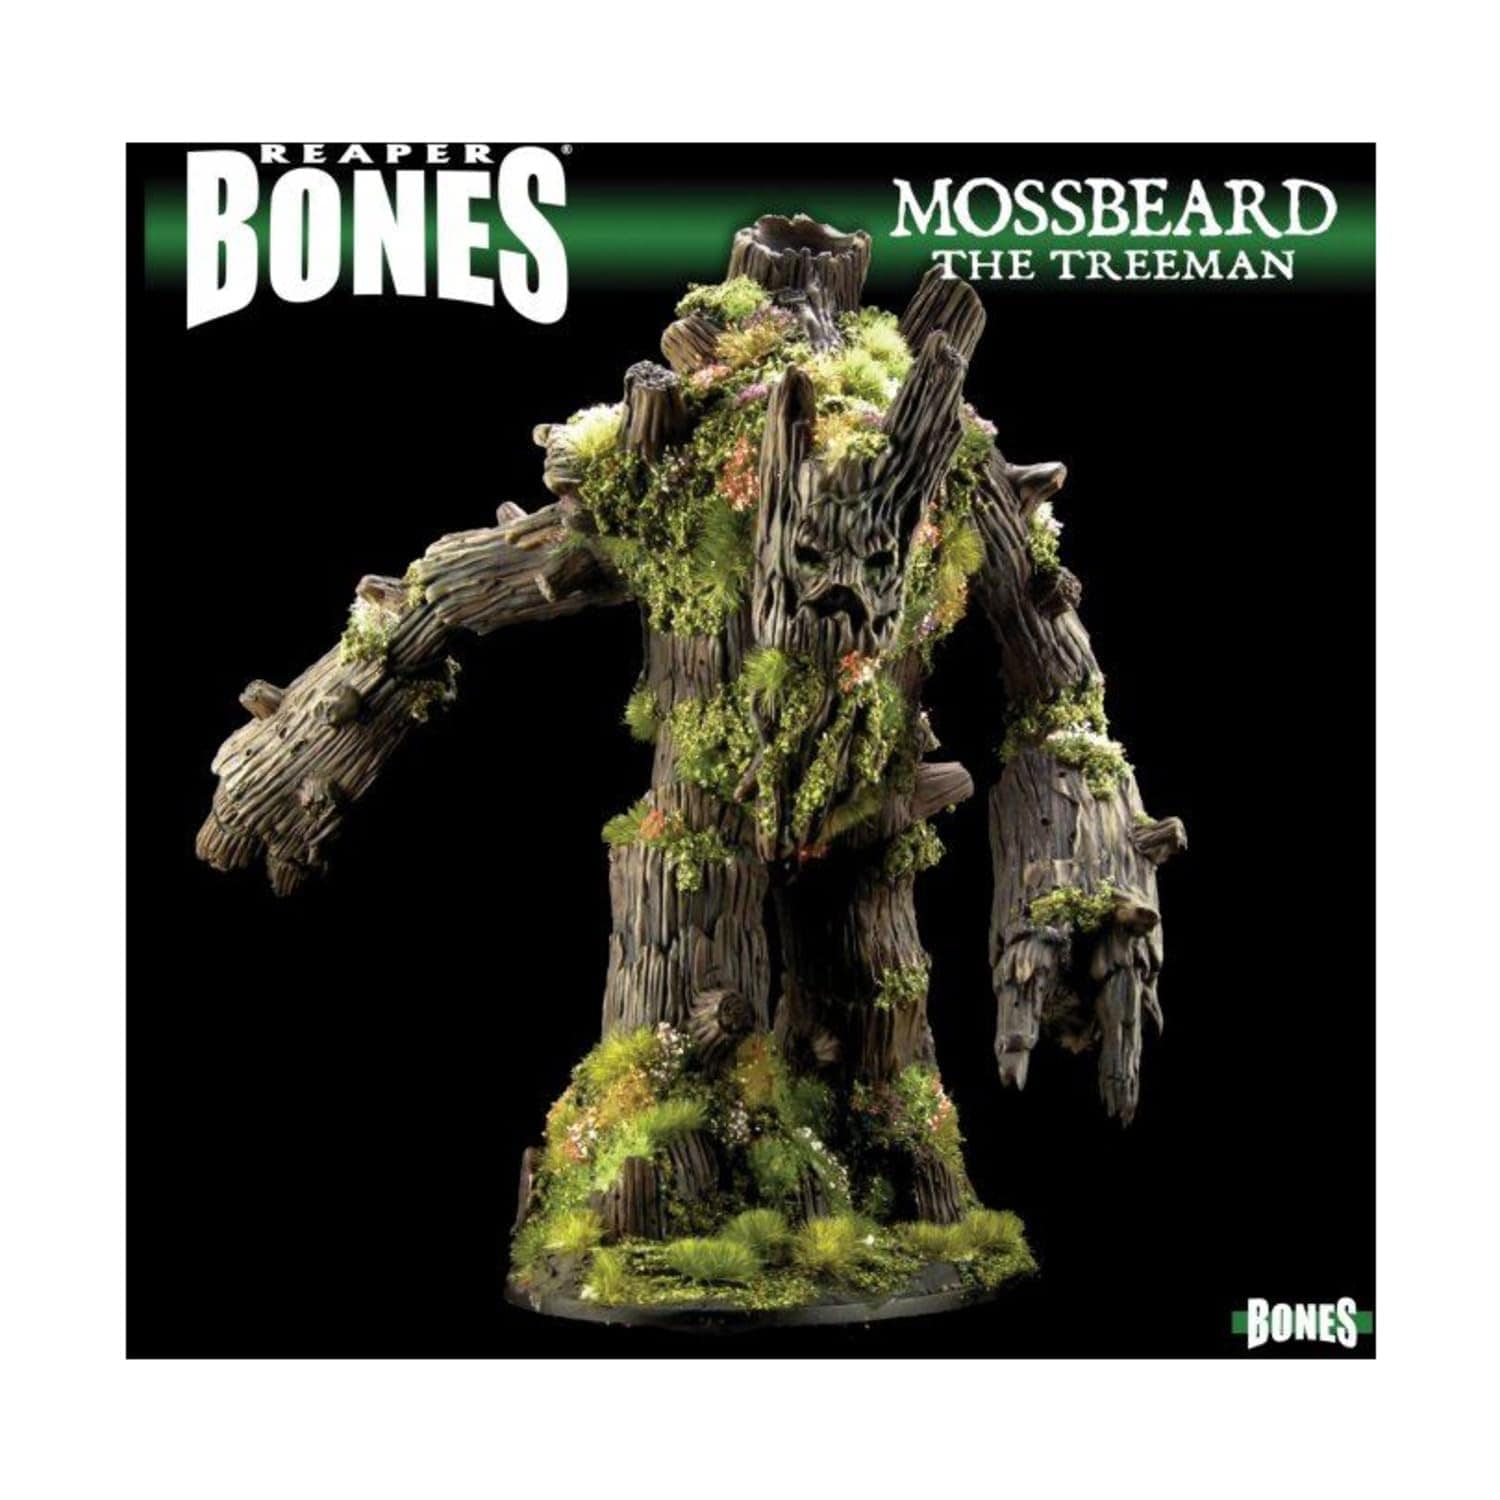 Reaper Miniatures Miniatures Games Reaper Miniatures Dark Heaven: Bones Classic - Mossbeard Deluxe Boxed Set